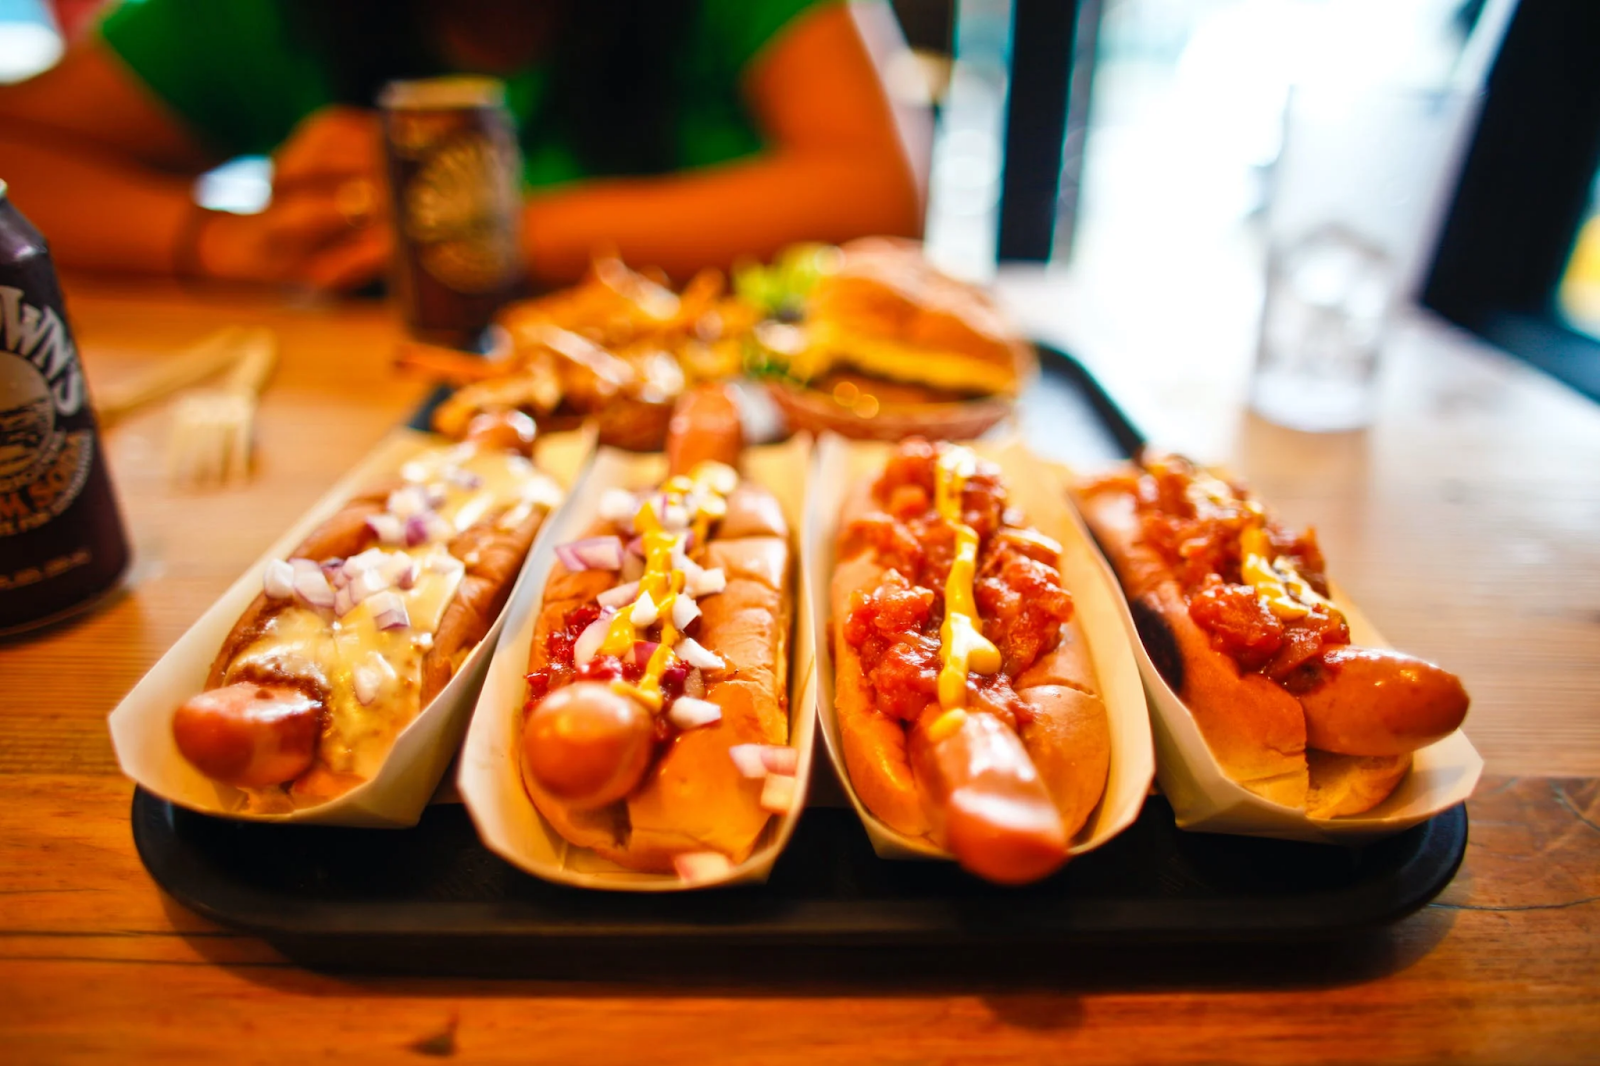 hot dogs, ou cachorro quente, típico da cultura americana.